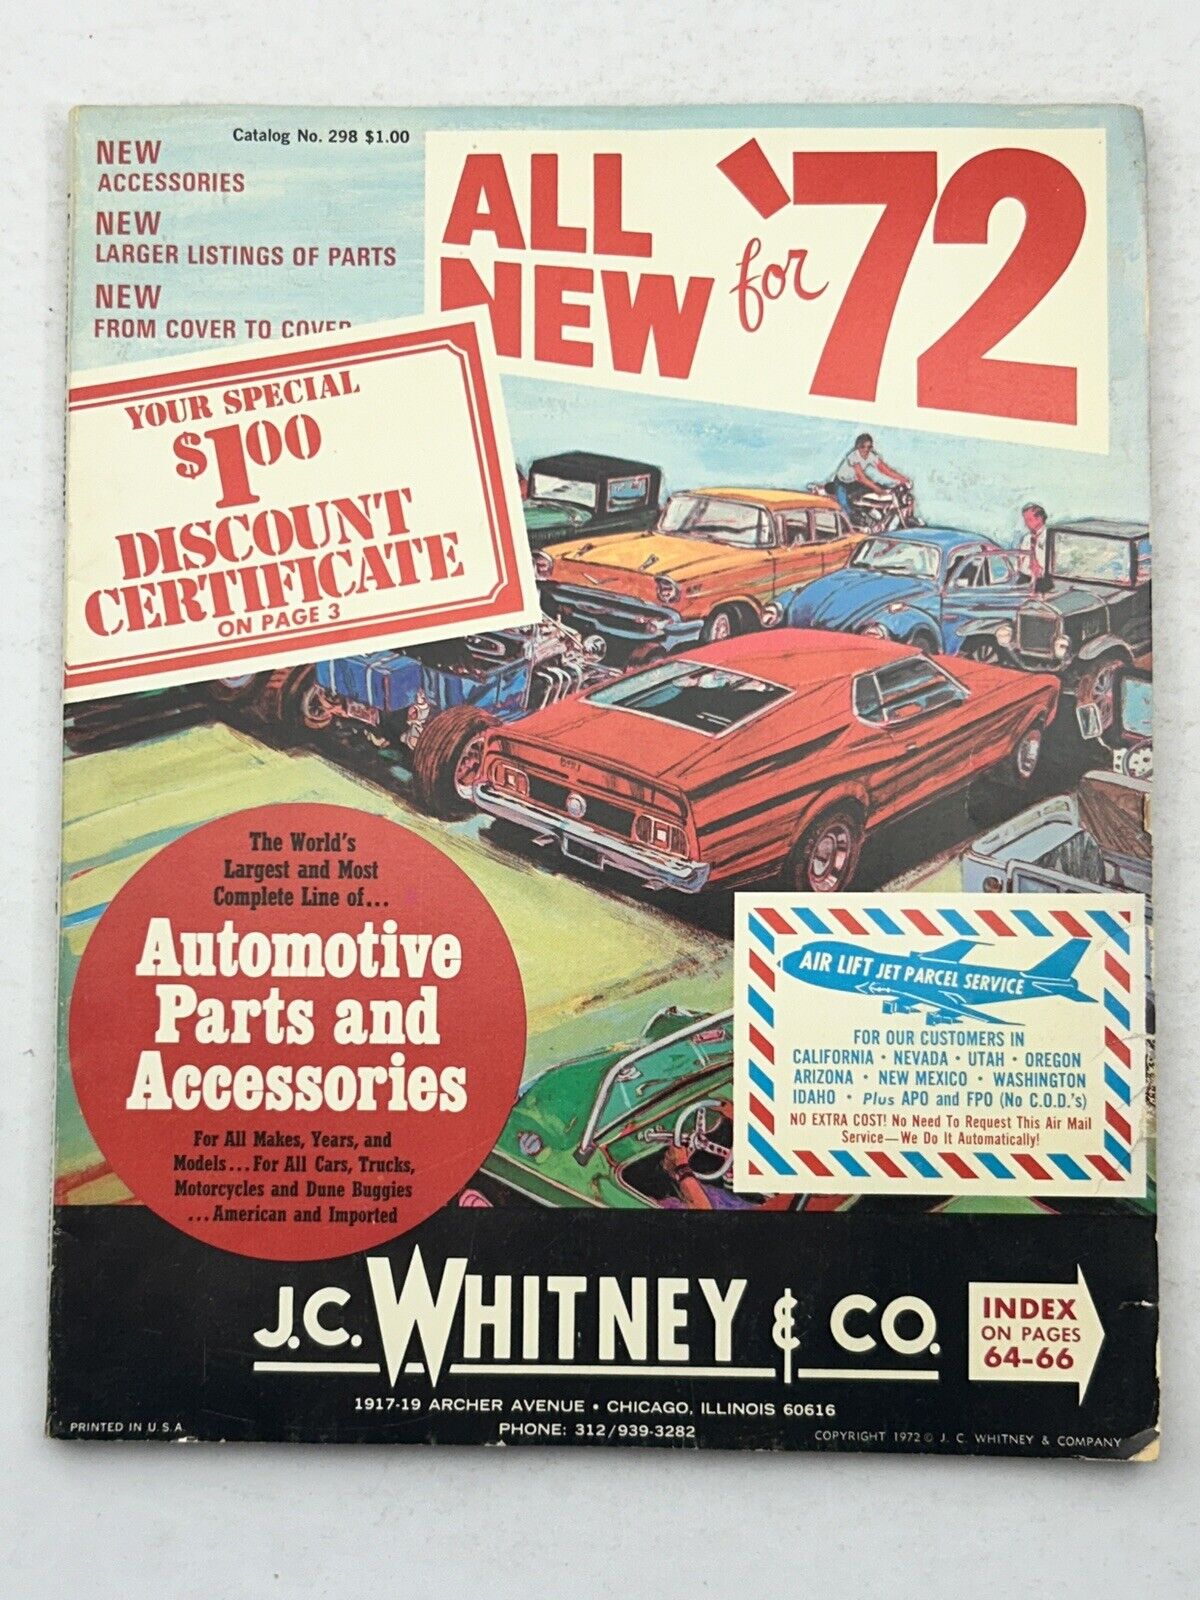 Vintage 1972 J. C. Whitney Automotive Parts & Accessories Catalog #298 - Cars VW